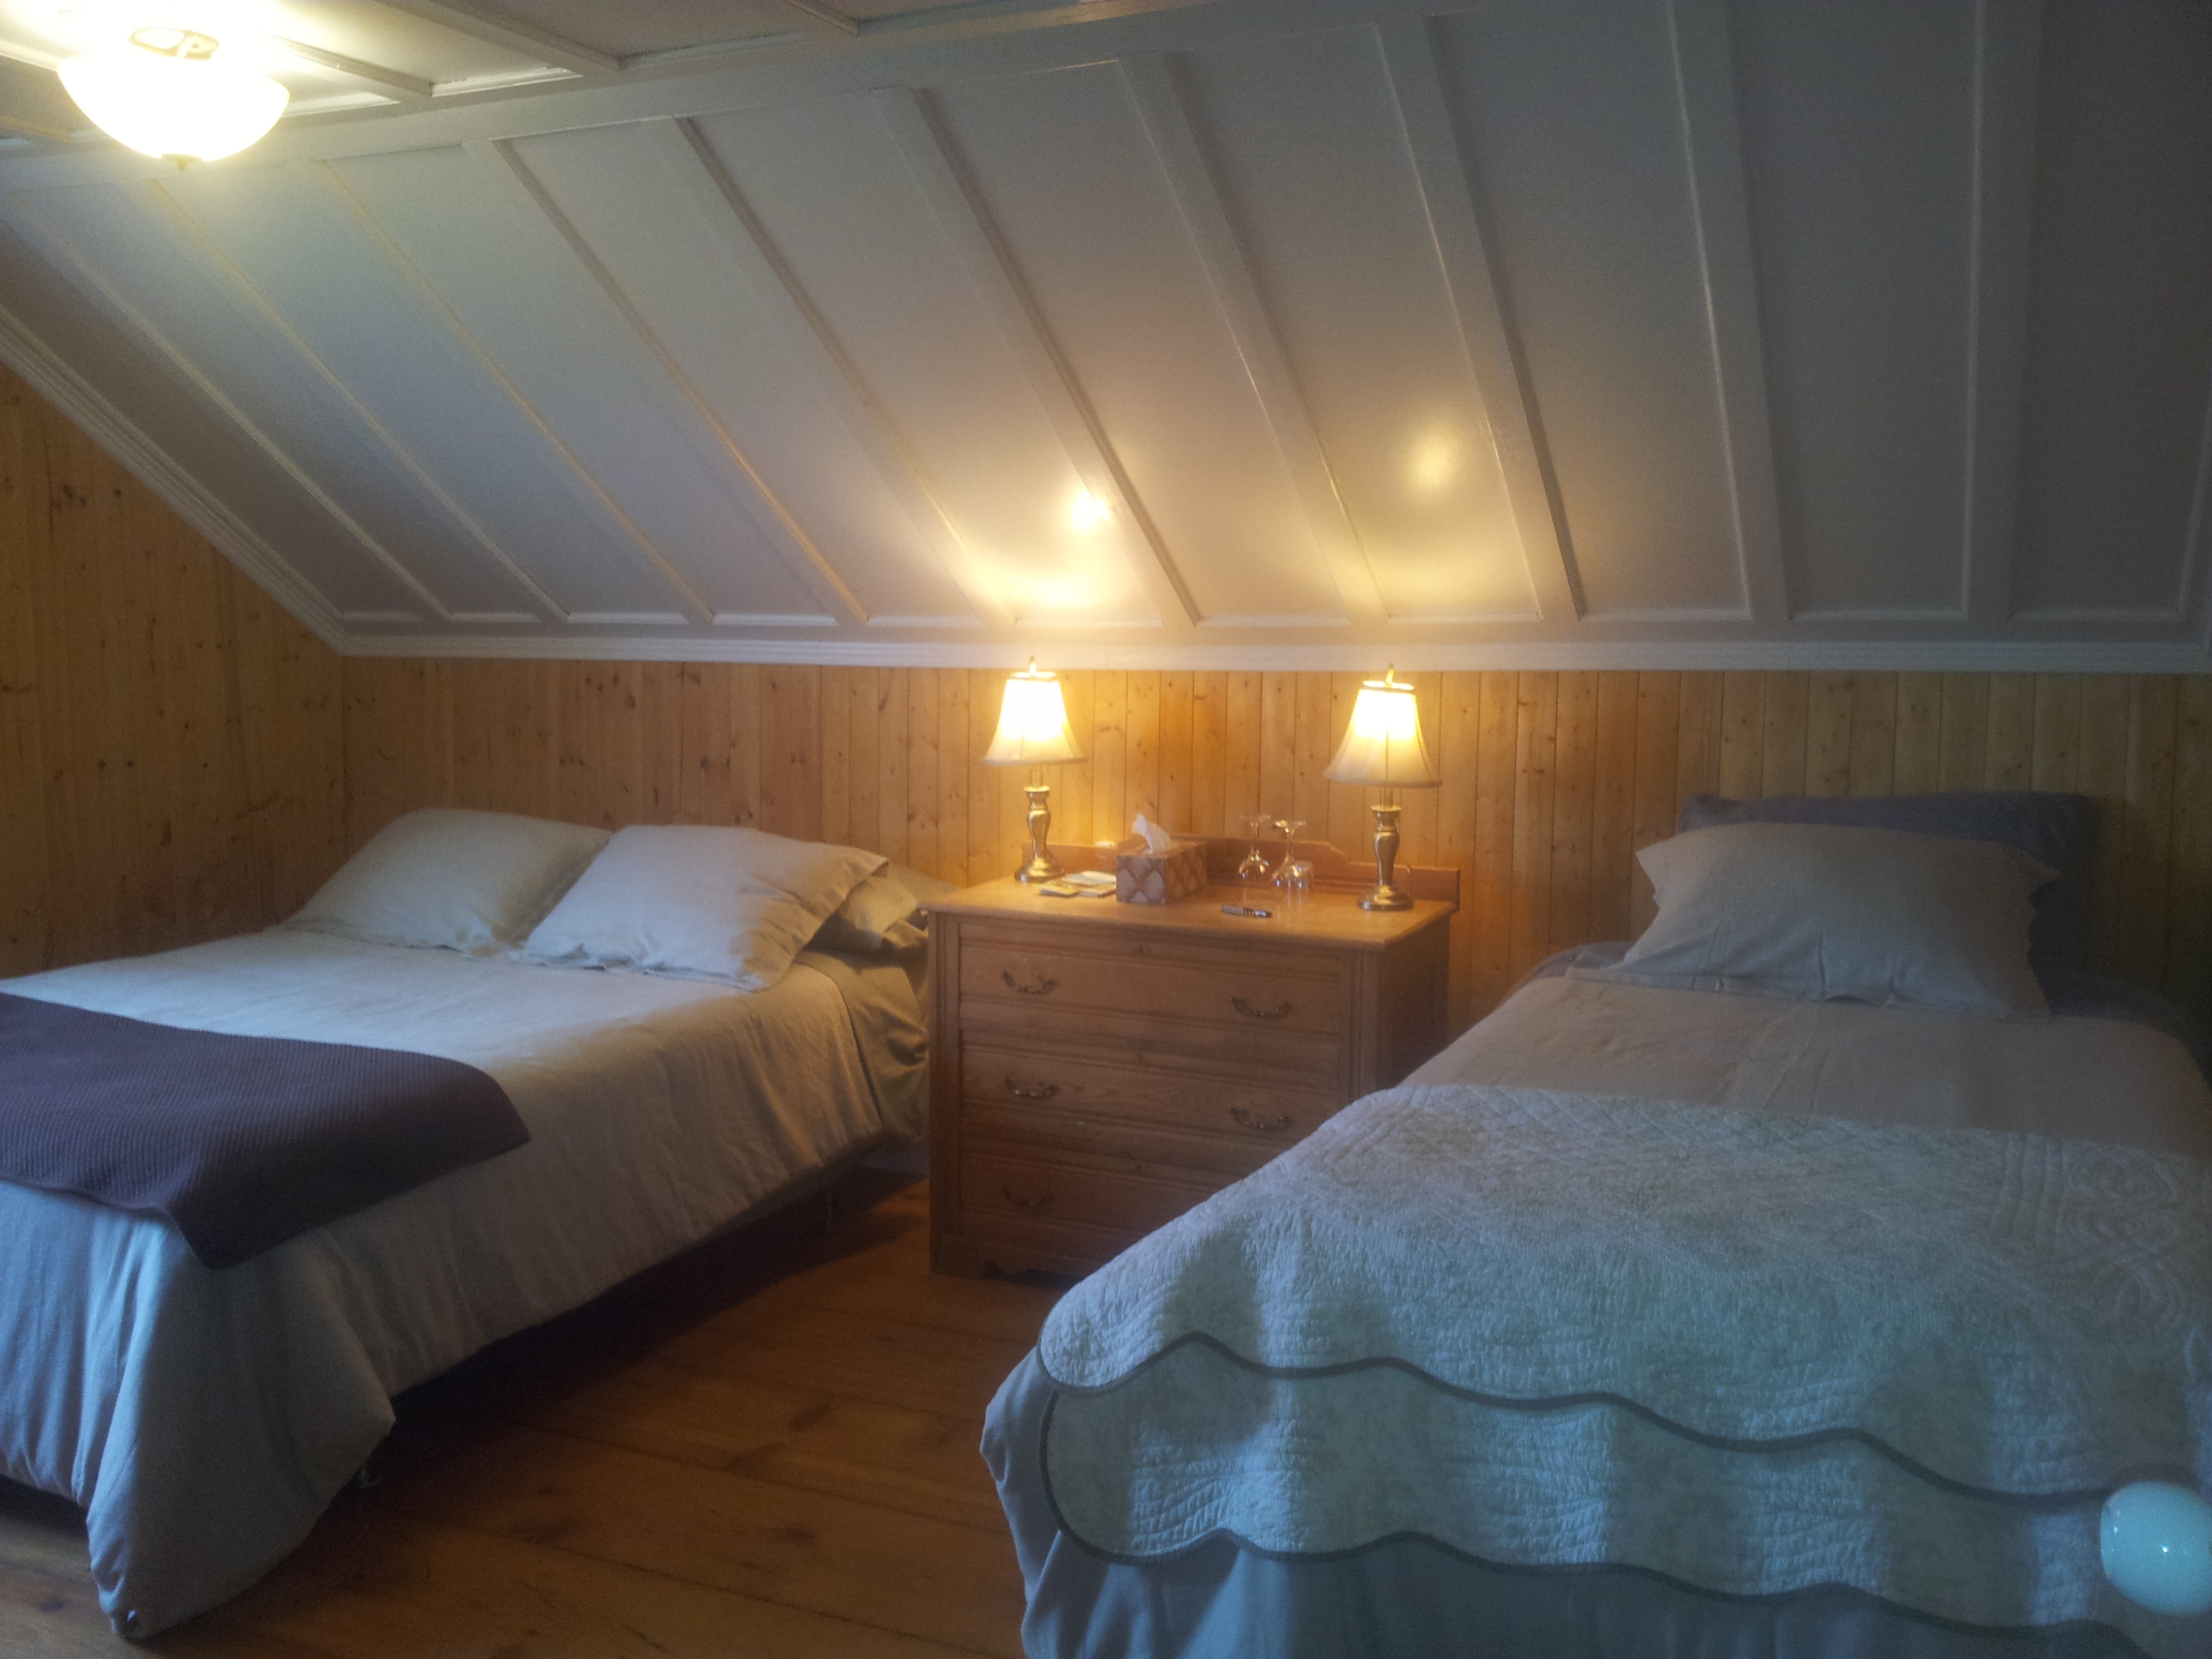 Charmante chambre côté jardin doté d'un lit double extra long et d'un lit simple. Chaleureuse finition en bois.